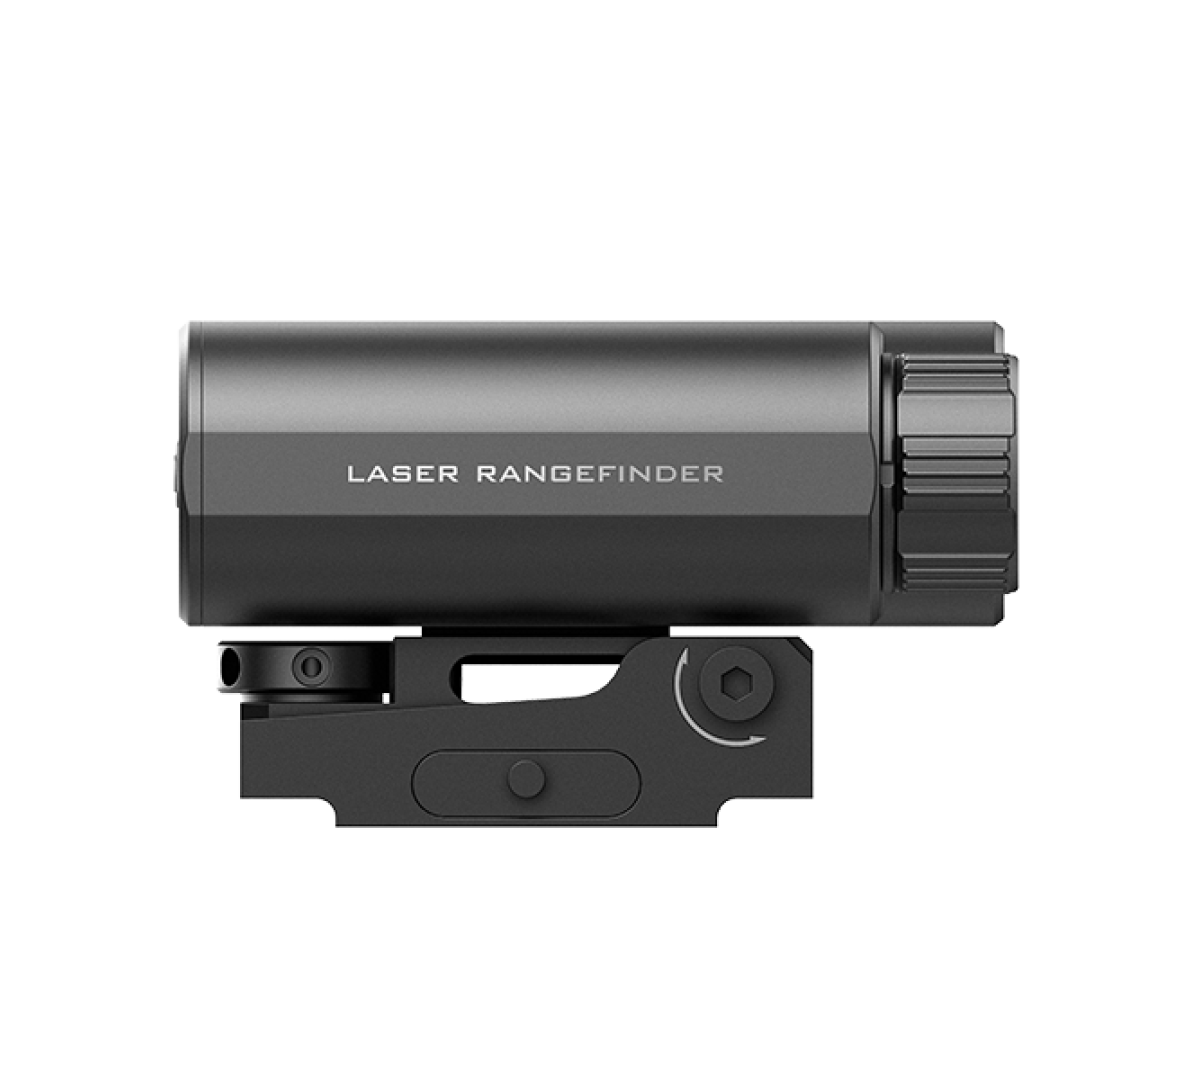 Лазерный дальномер iRay ILR-1200-2 для предобъективных насадок iRay серии Mate